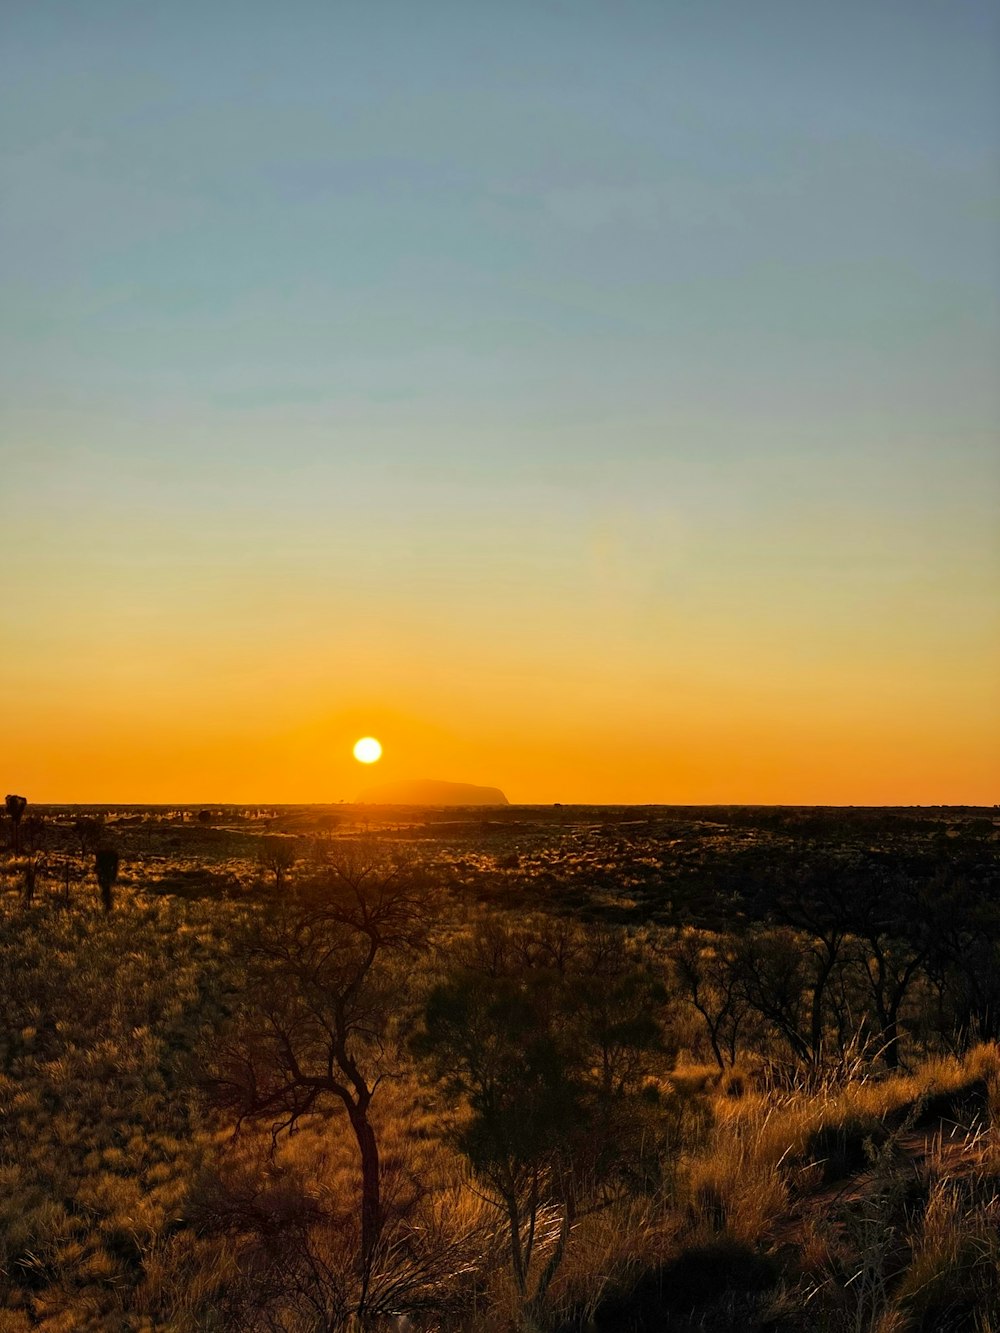 Le soleil se couche sur une plaine désertique